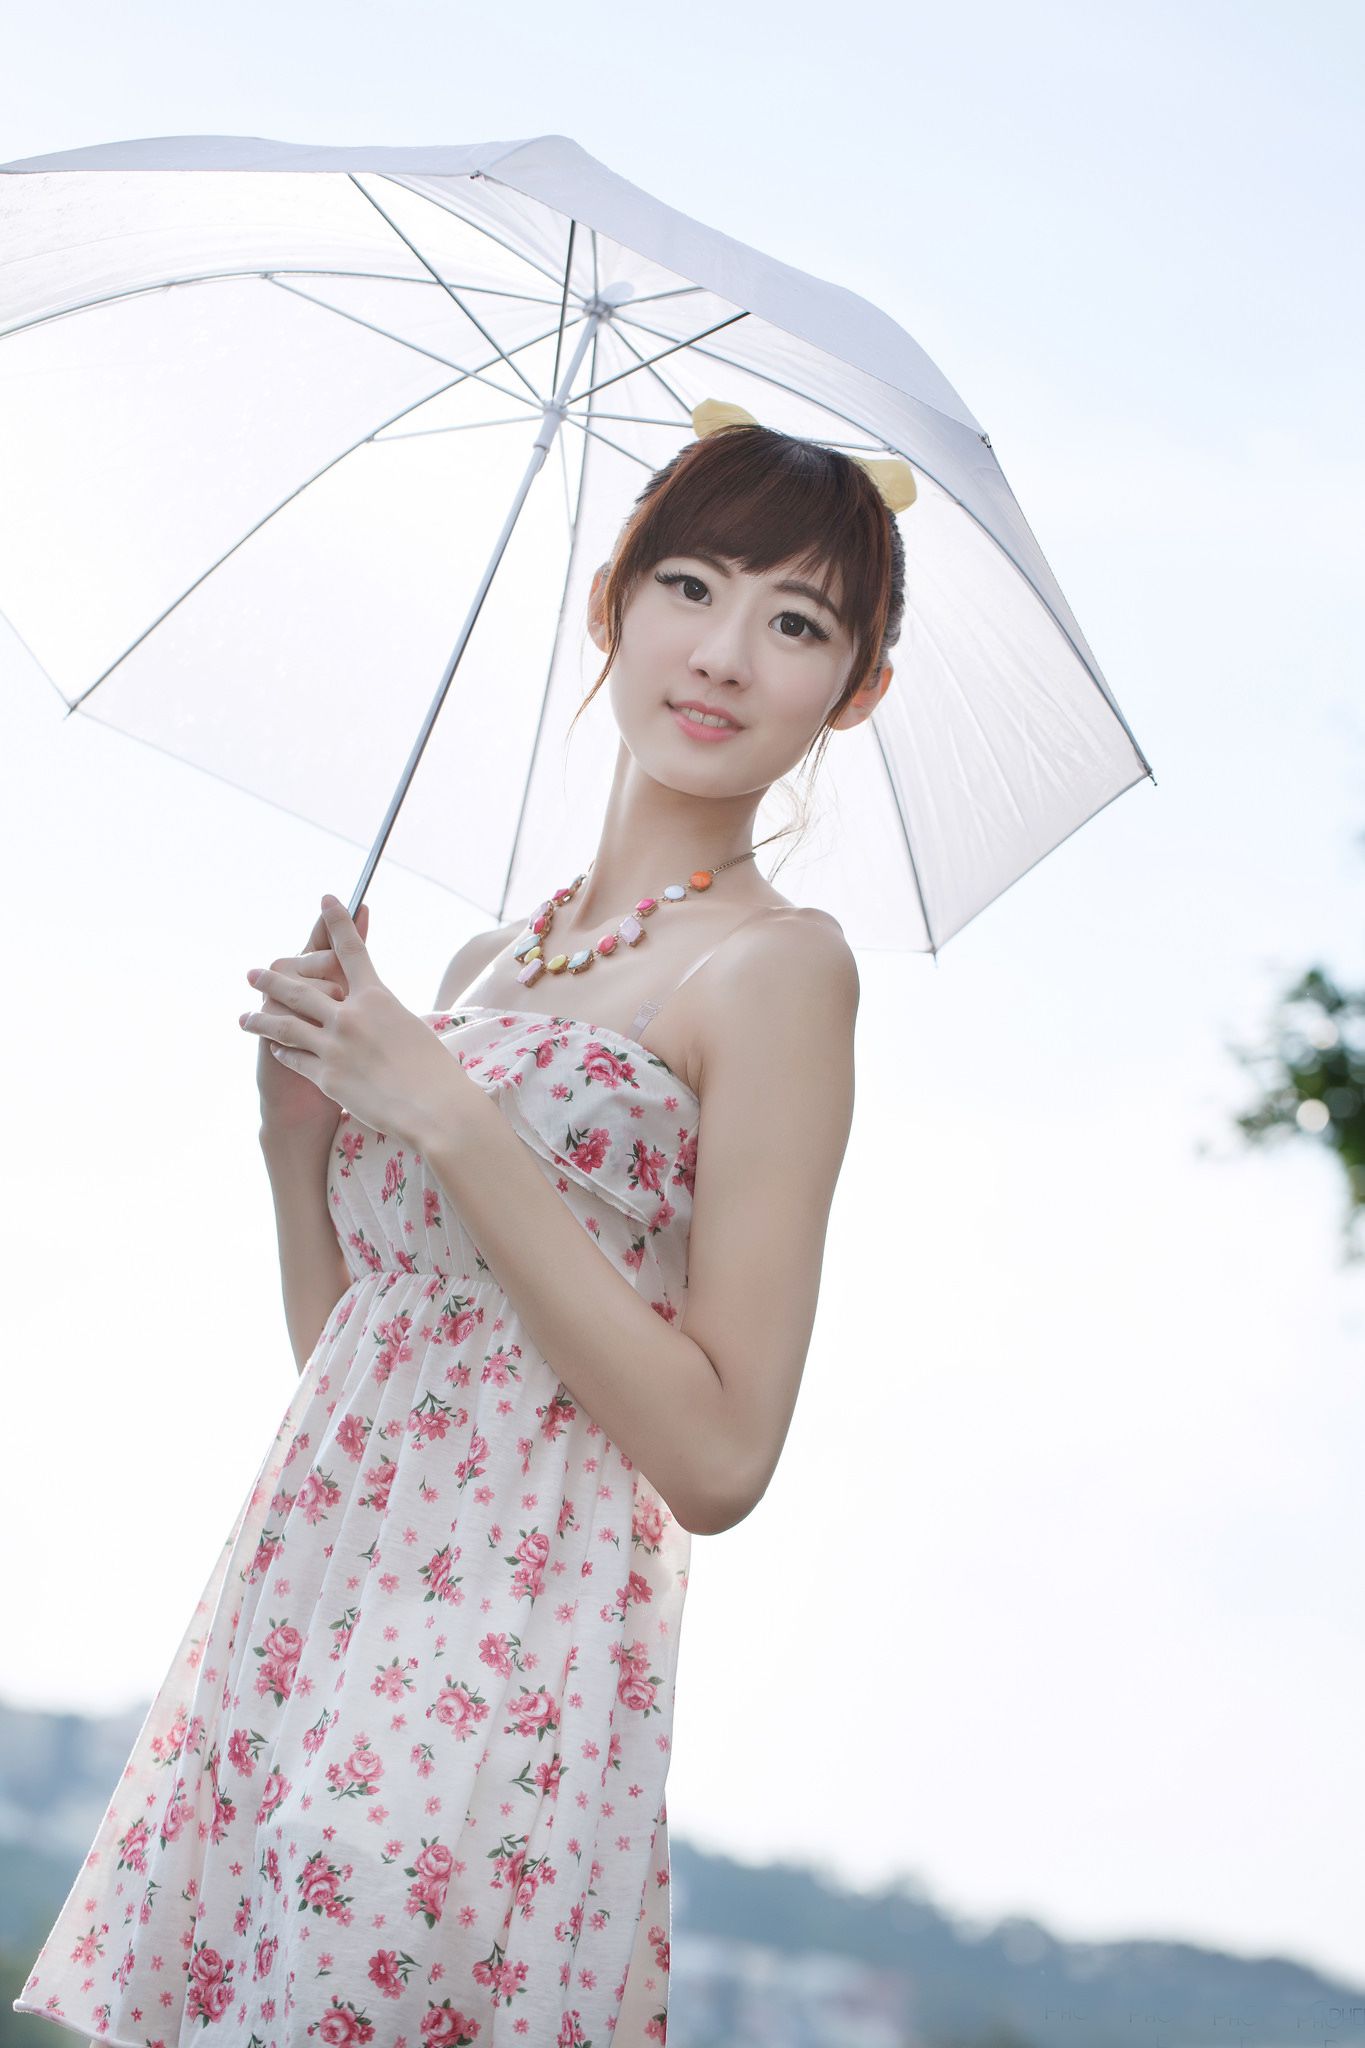 台湾模特Queena/林茉晶《公园外拍》写真集